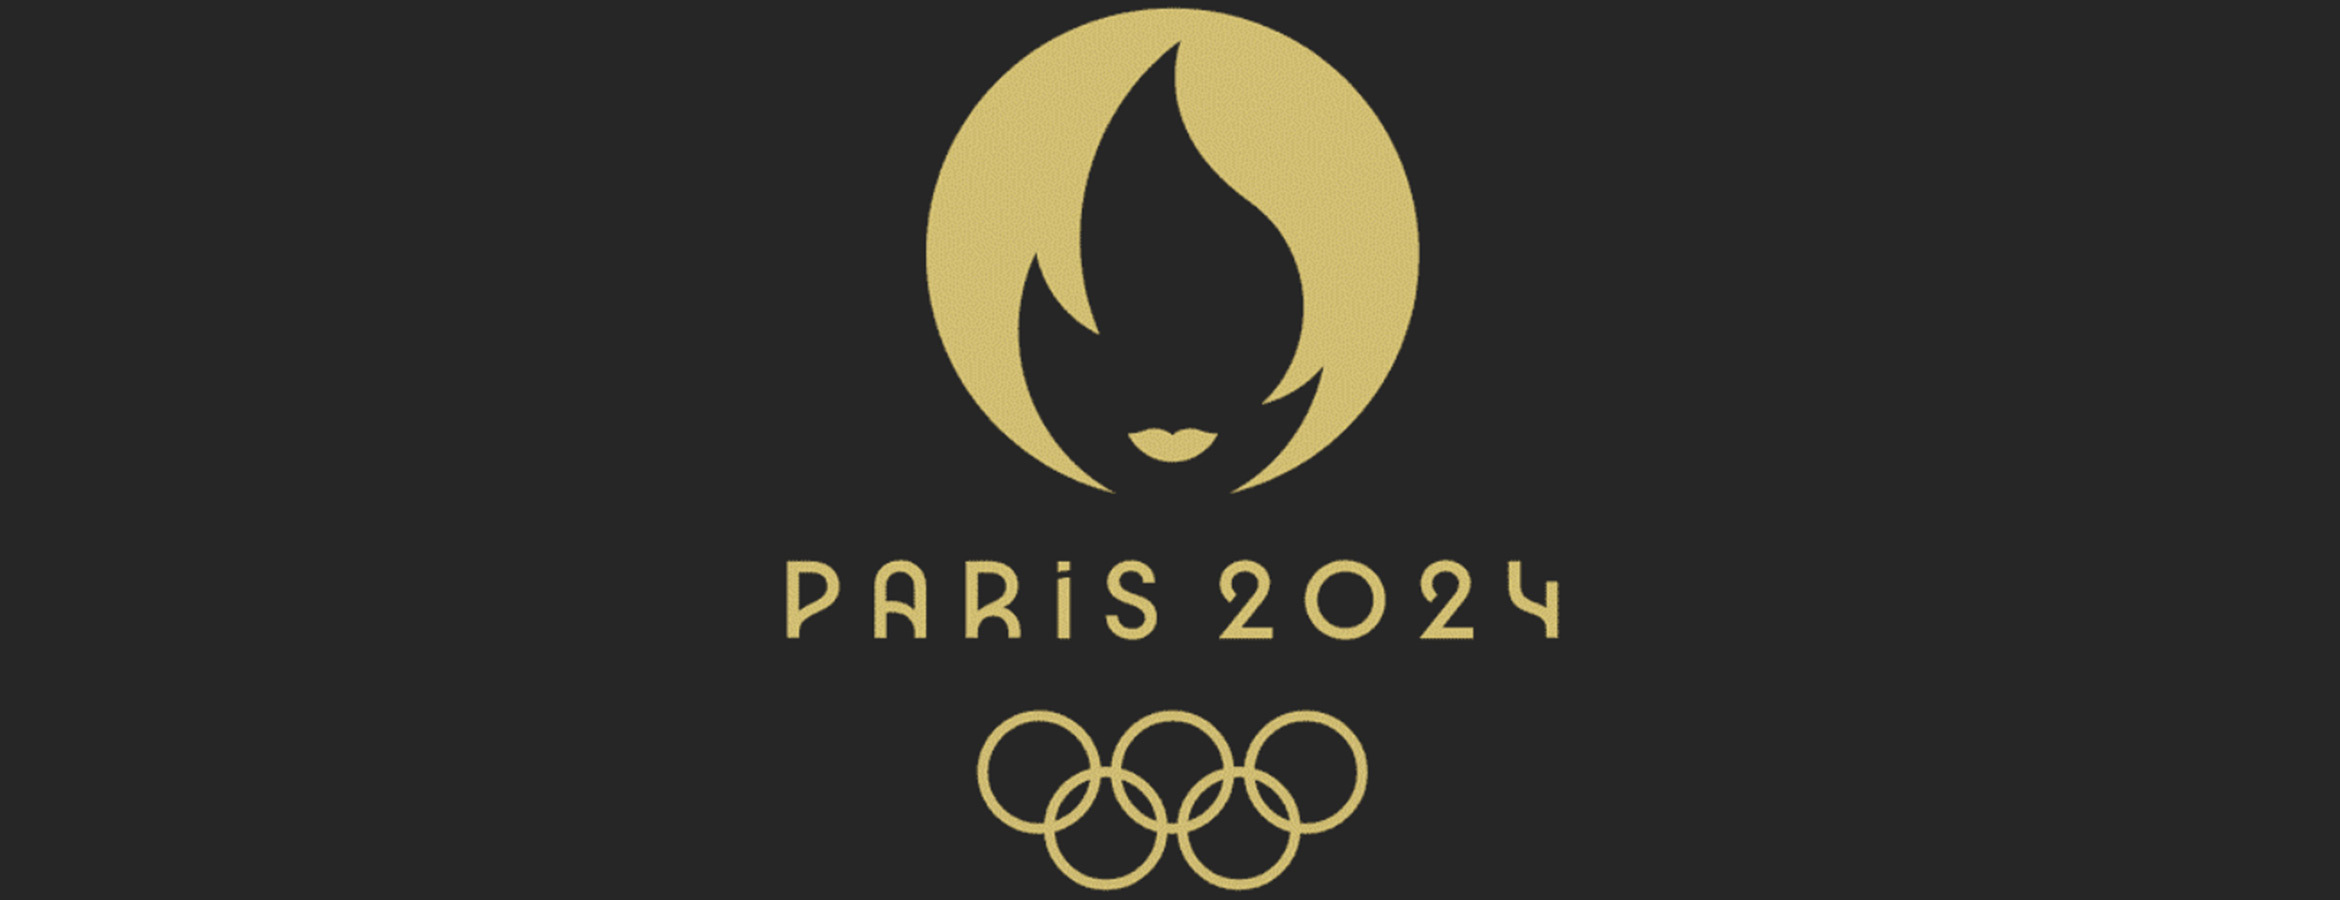 Découvrez la conception du logo des prochains JO Paris 2024 – La